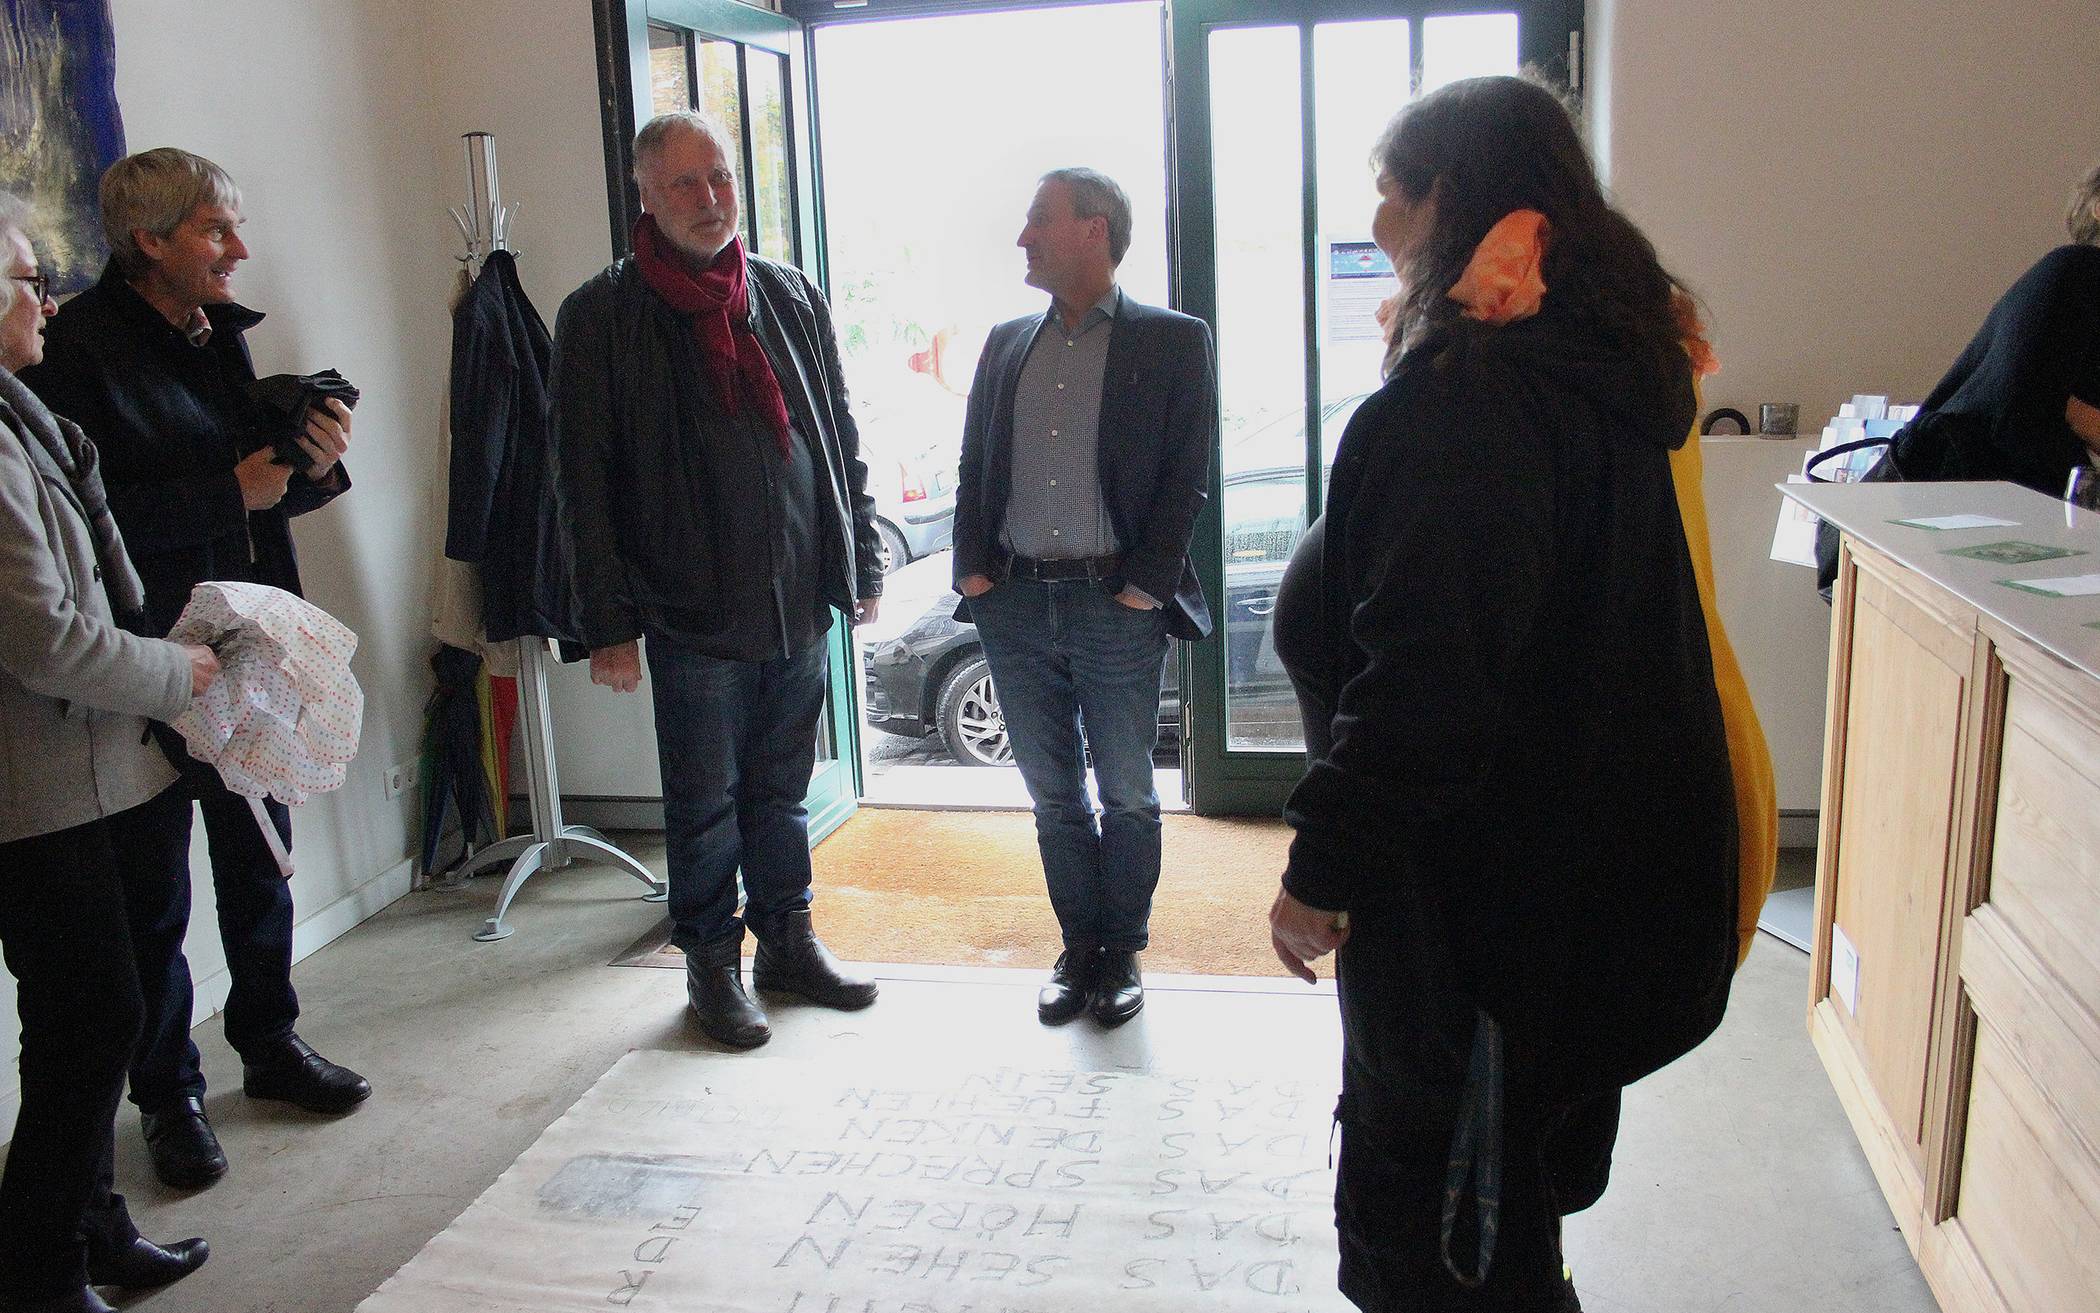  Oberbürgermeister Thomas Geisel im Gespräch mit dem Künstler Uwe Piel im Eingang des Gerresheimer Kulturbahnhofs, rechts Dorothee Büsse, die unermüdliche Antreiberin der Gruppe „Haltepunkt“. 